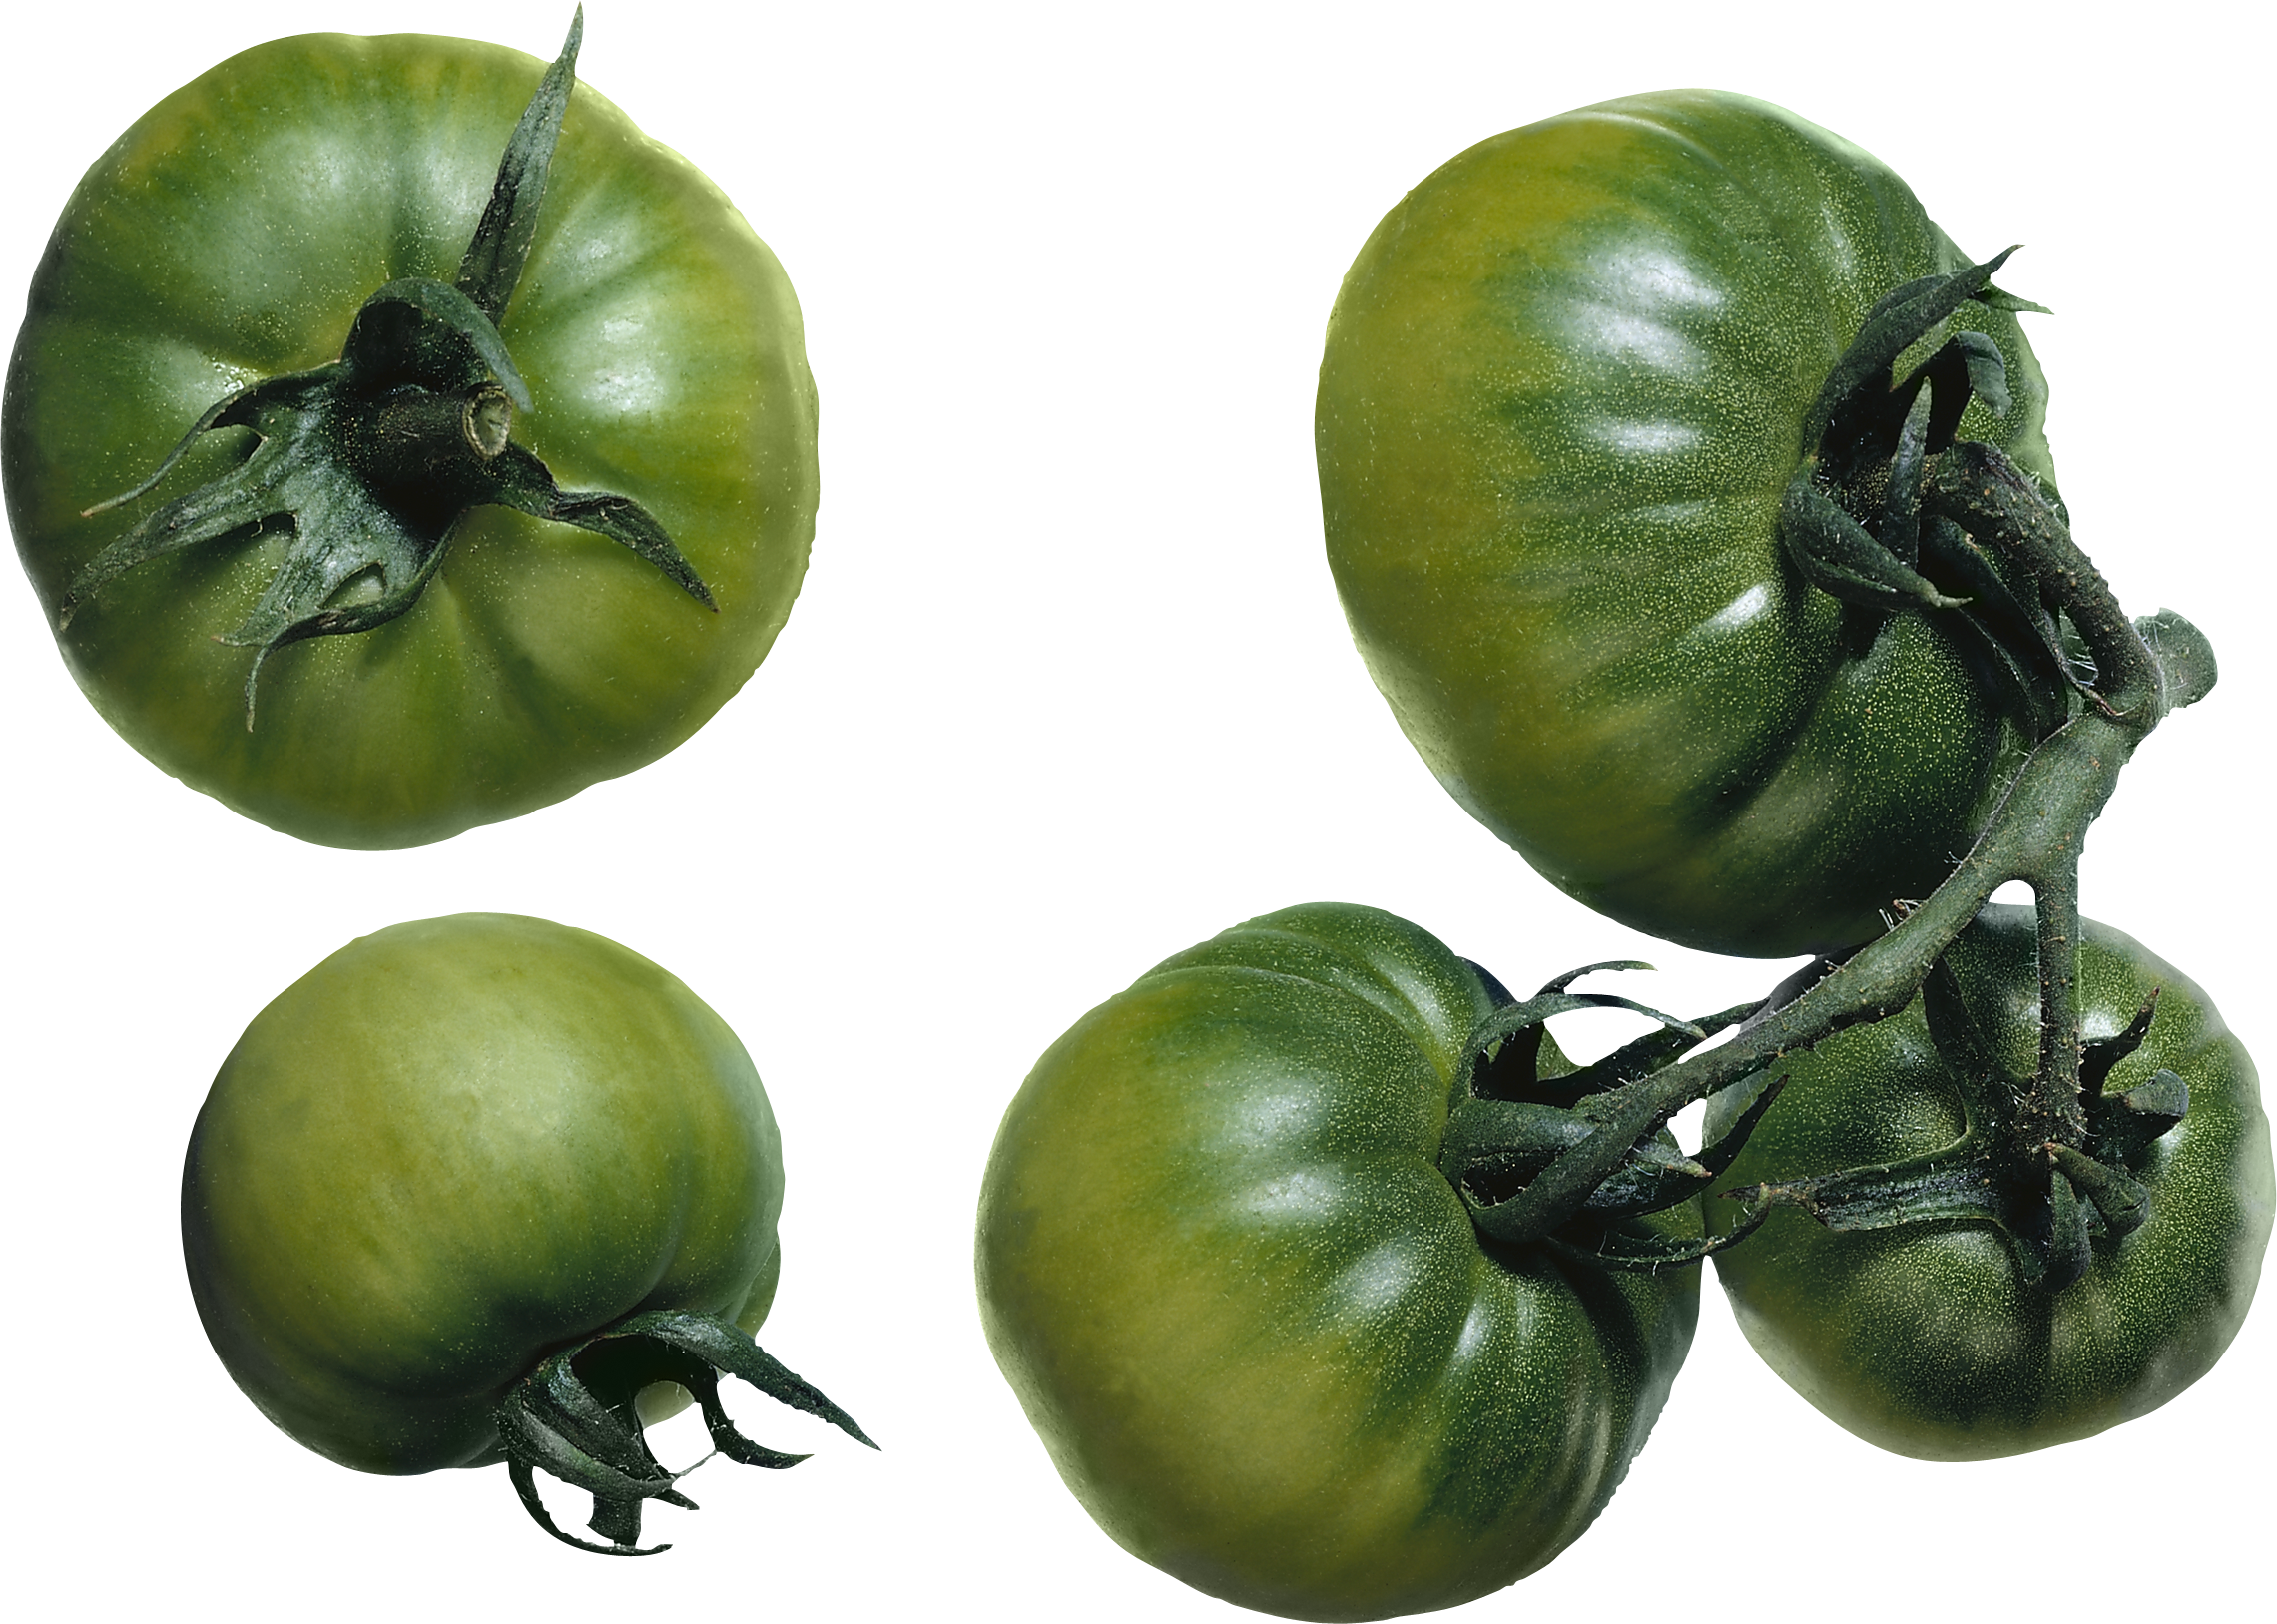 Cà chua xanh